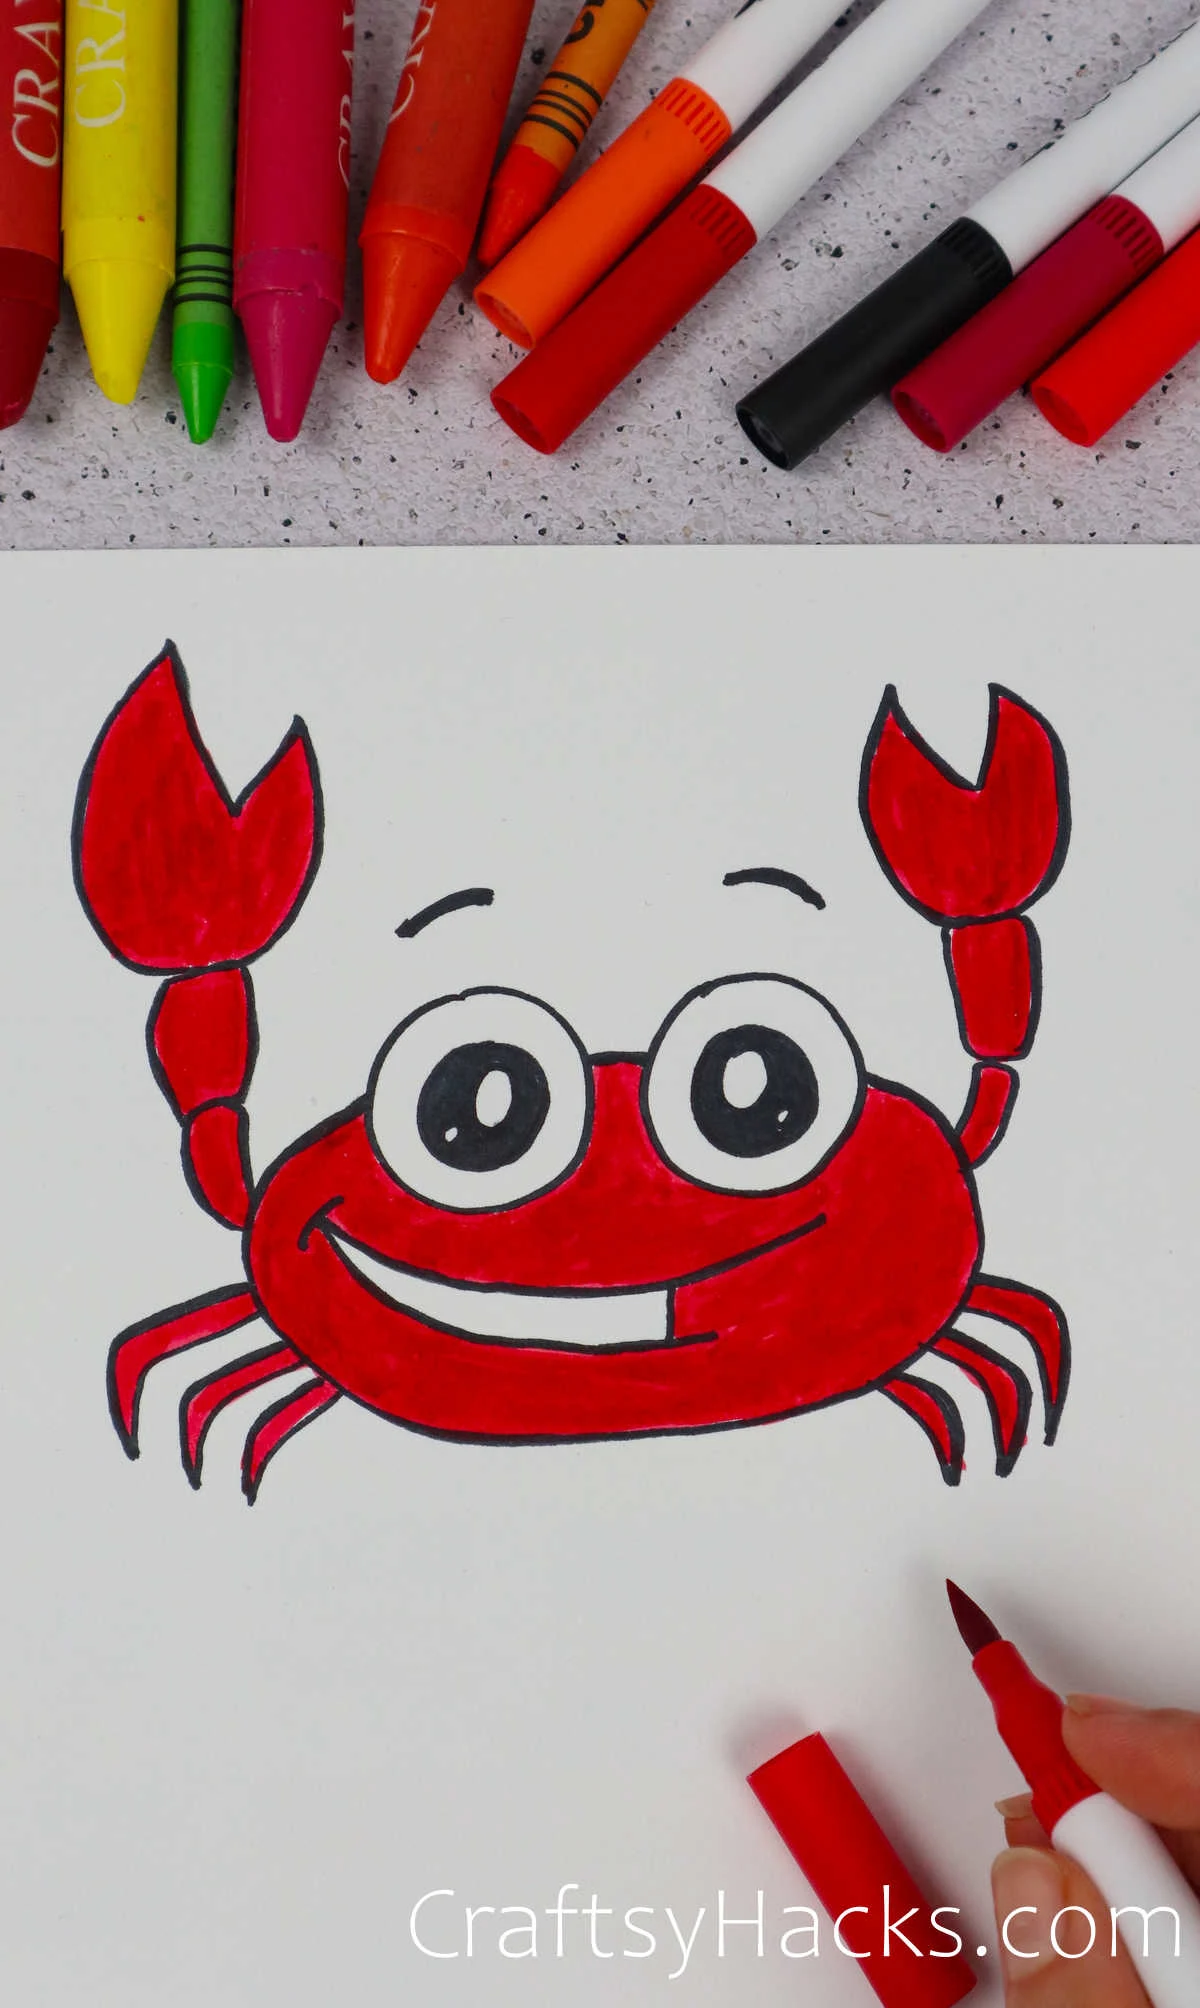 scorpion doodle